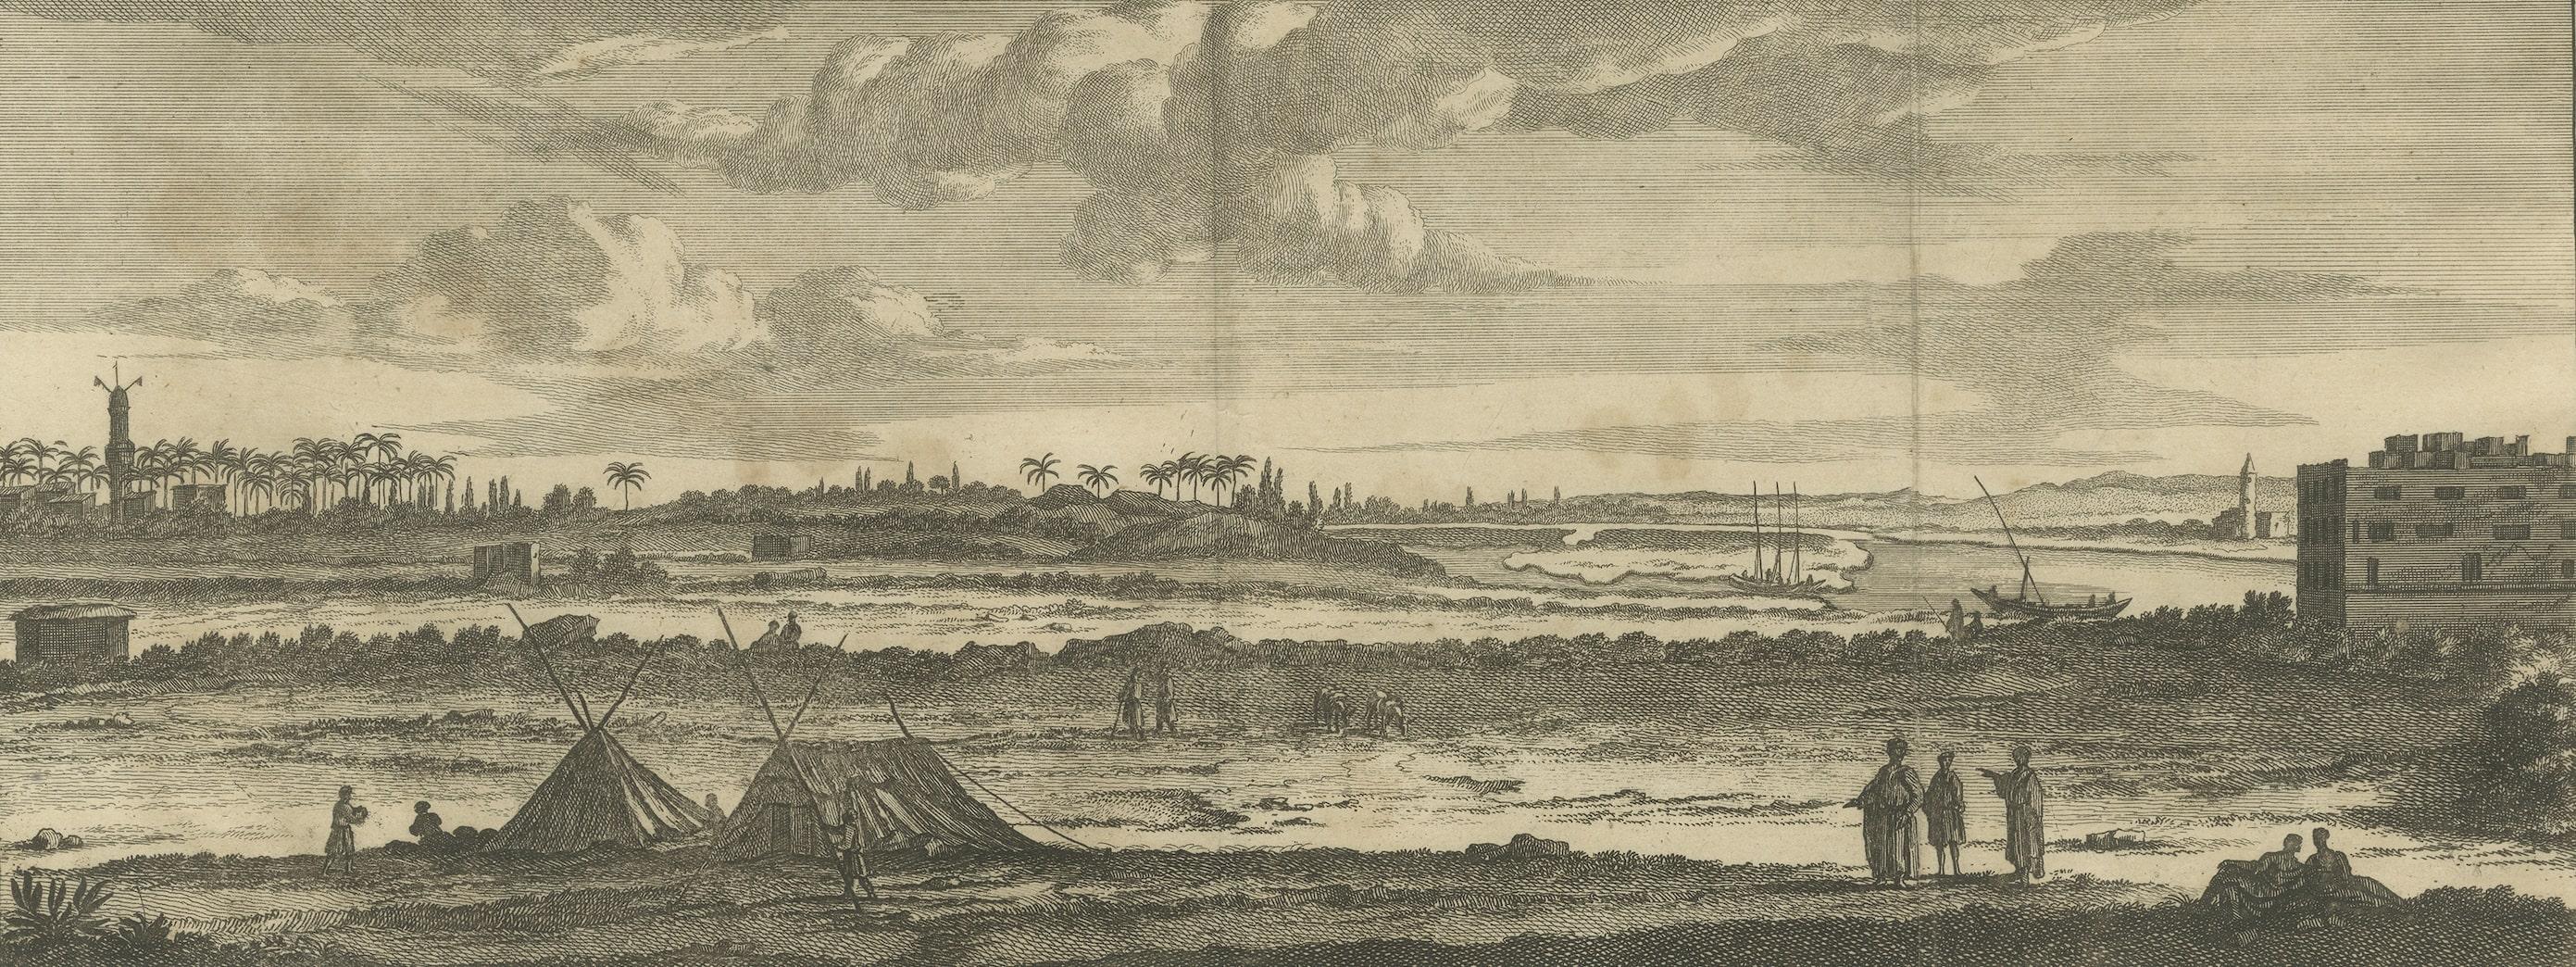 Gravure ancienne avec des vues du Nil, Égypte. Ci-dessous, près de Damiette. Publié par C.I.C., vers 1700.

Cornelis de Bruijn (également orthographié Cornelius de Bruyn, prononcé (1652 - 1726/7) était un artiste et voyageur néerlandais. Il a